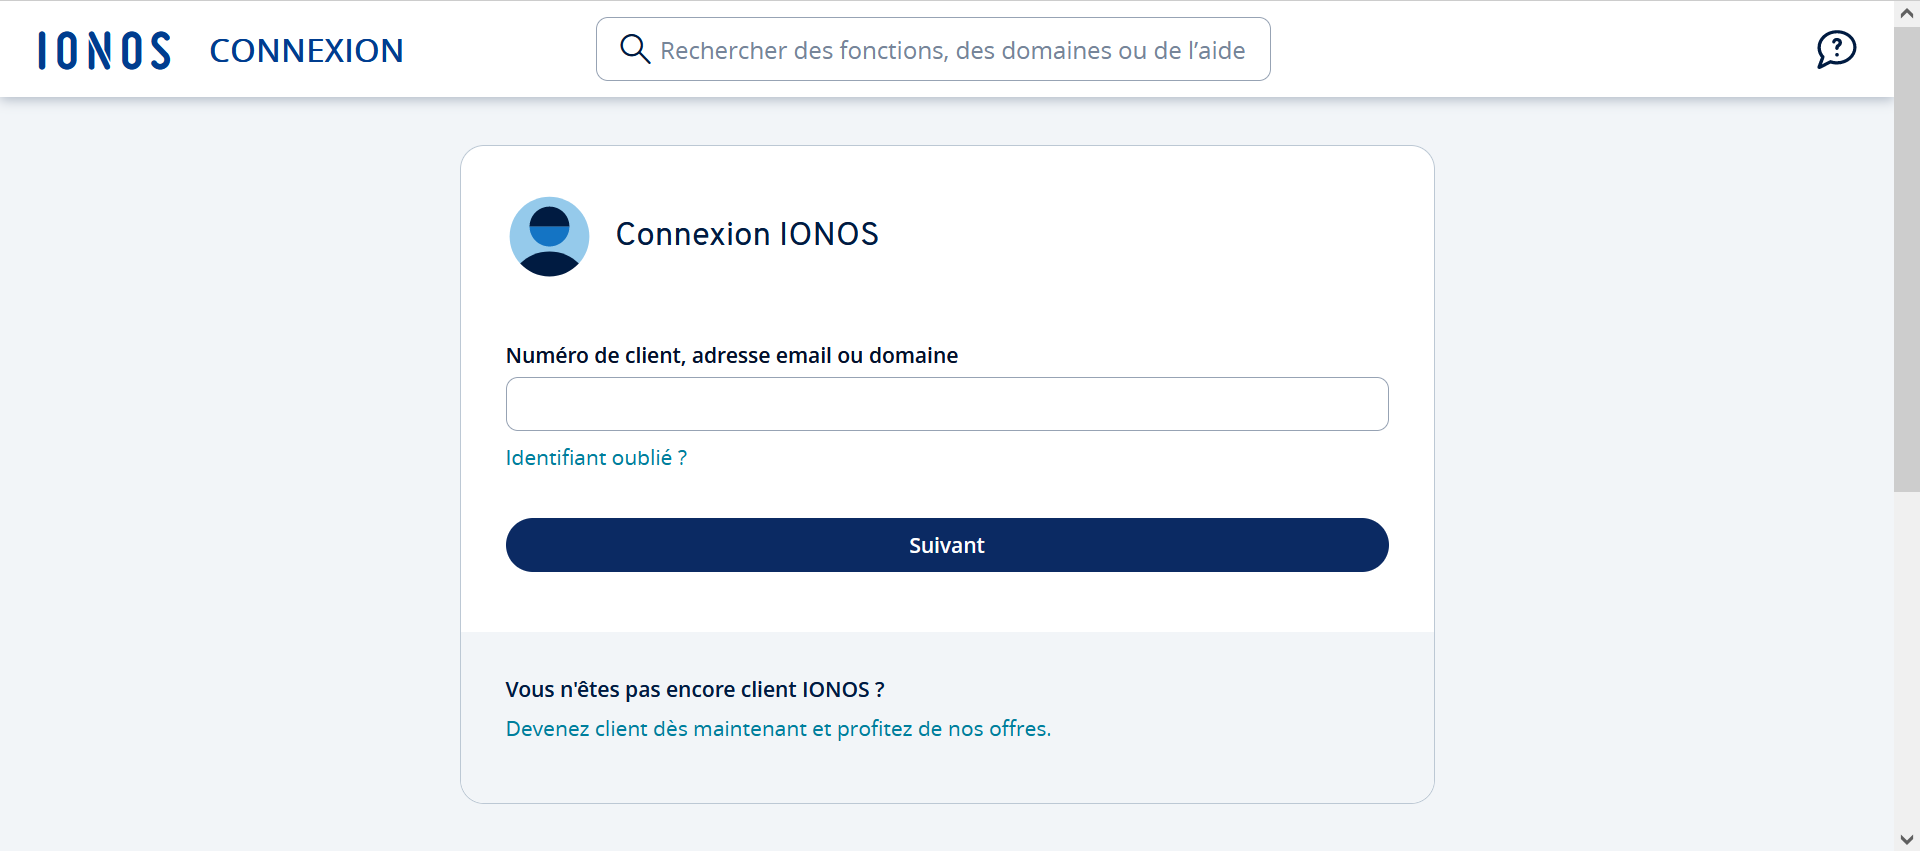 Capture d’écran de la page de connexion de IONOS